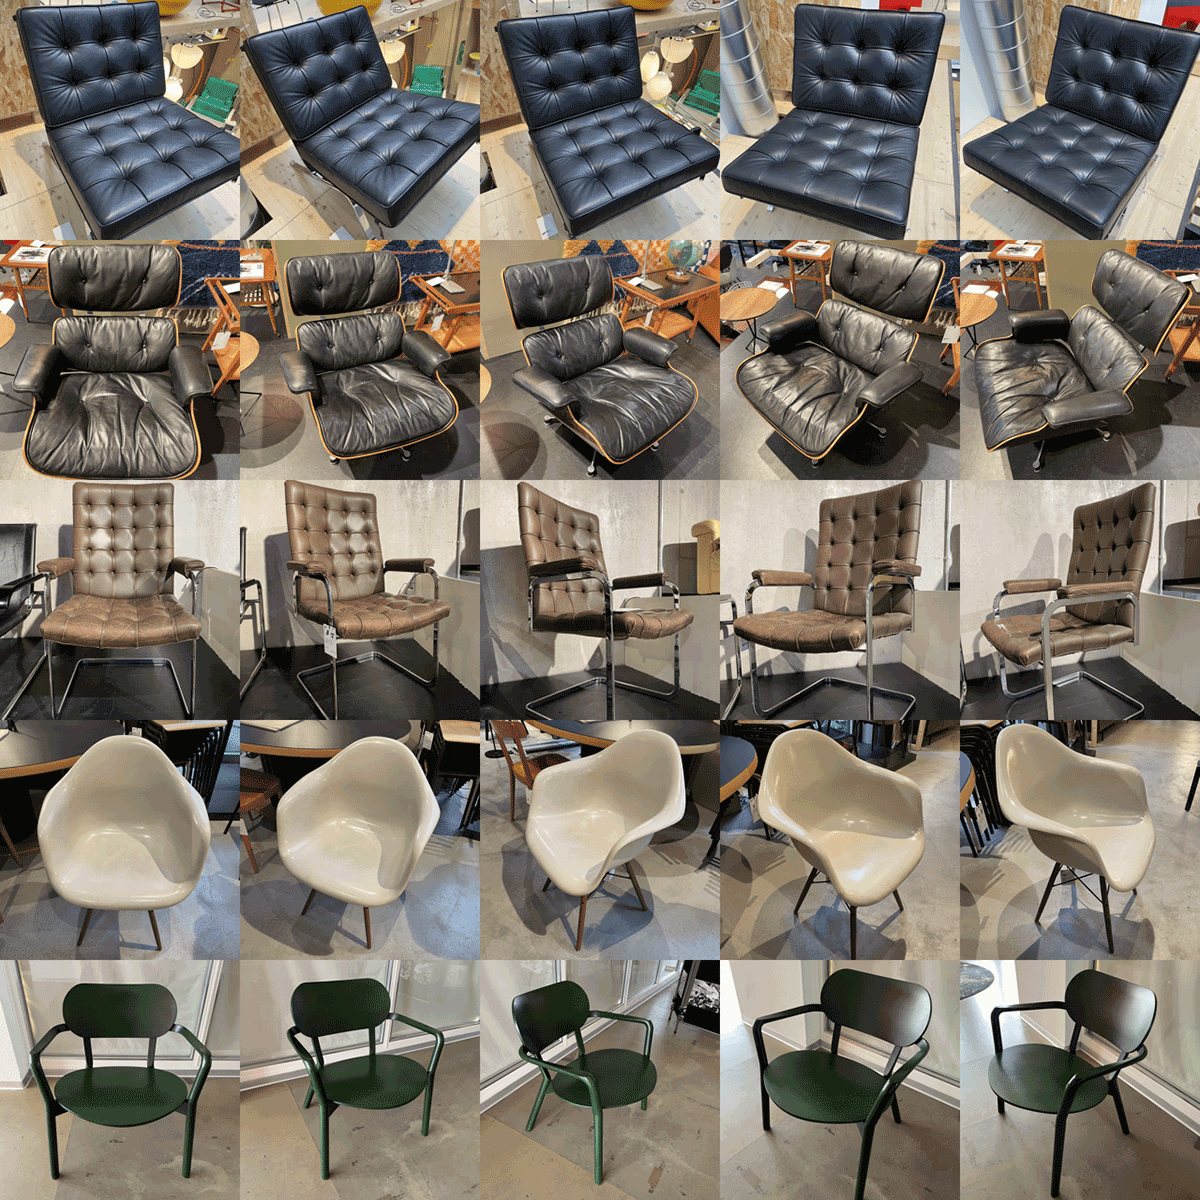 <b>図 1.</b>サンプル家具デザイン会社が製作した椅子の中核となる�デザインの美学を表現した5種類の椅子の画像。